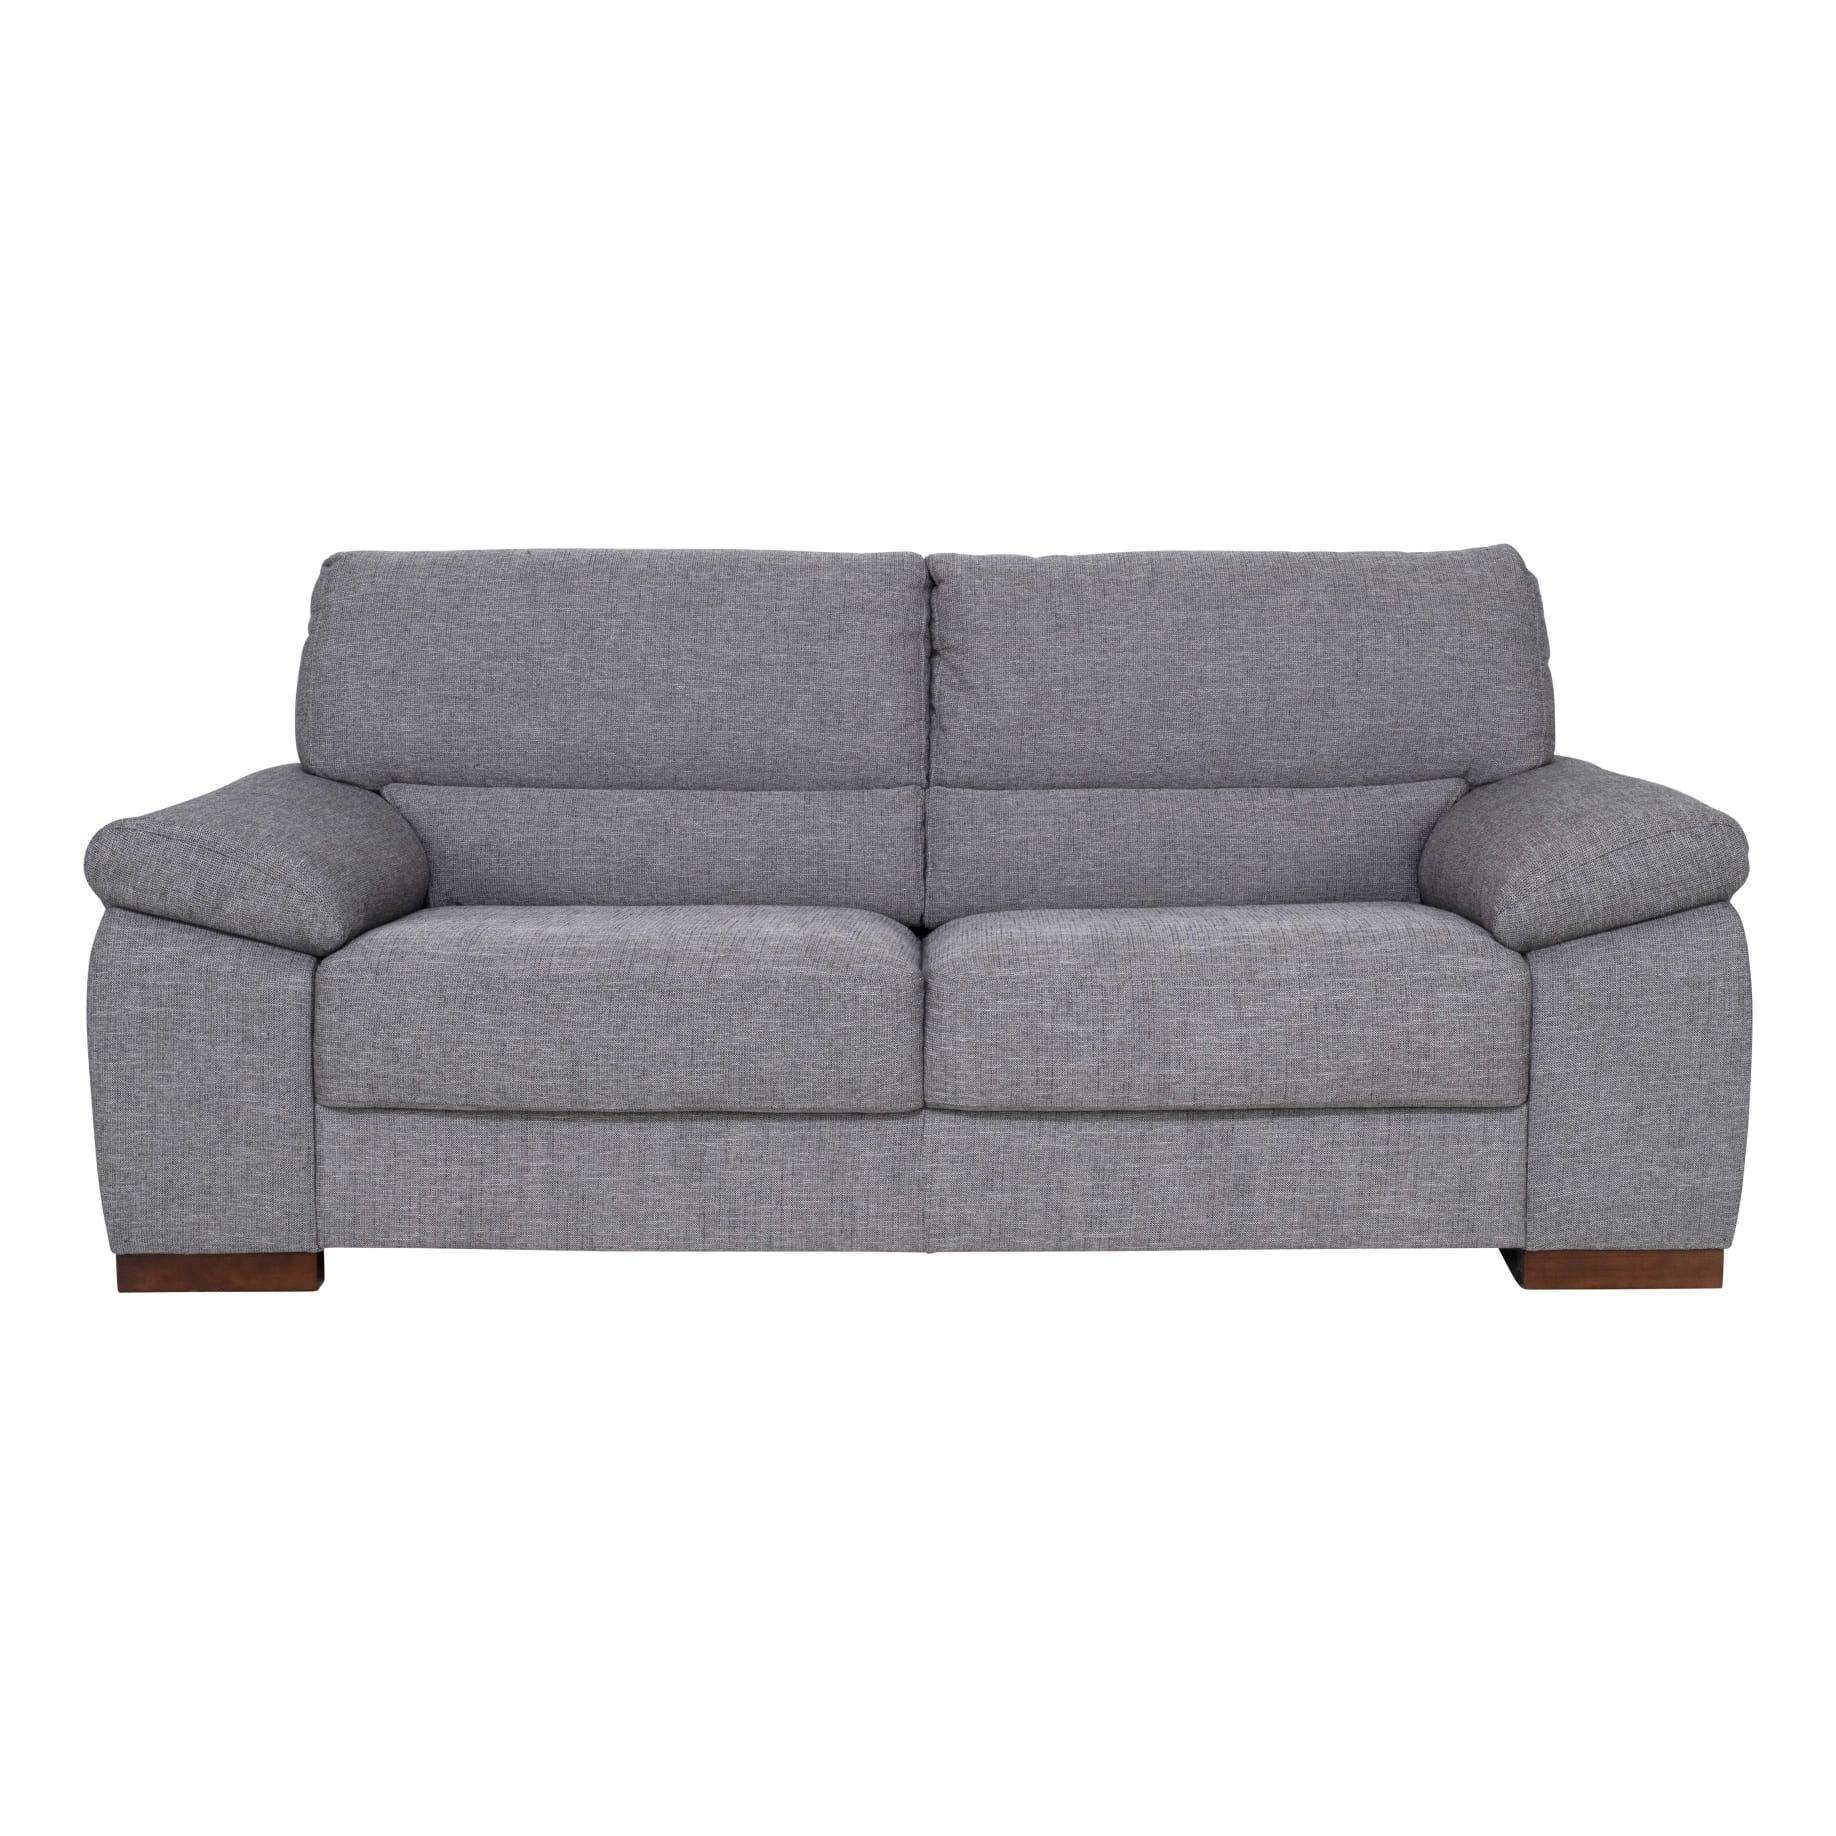 Johnson 2.5 Seater Sofa in Rome Metallic